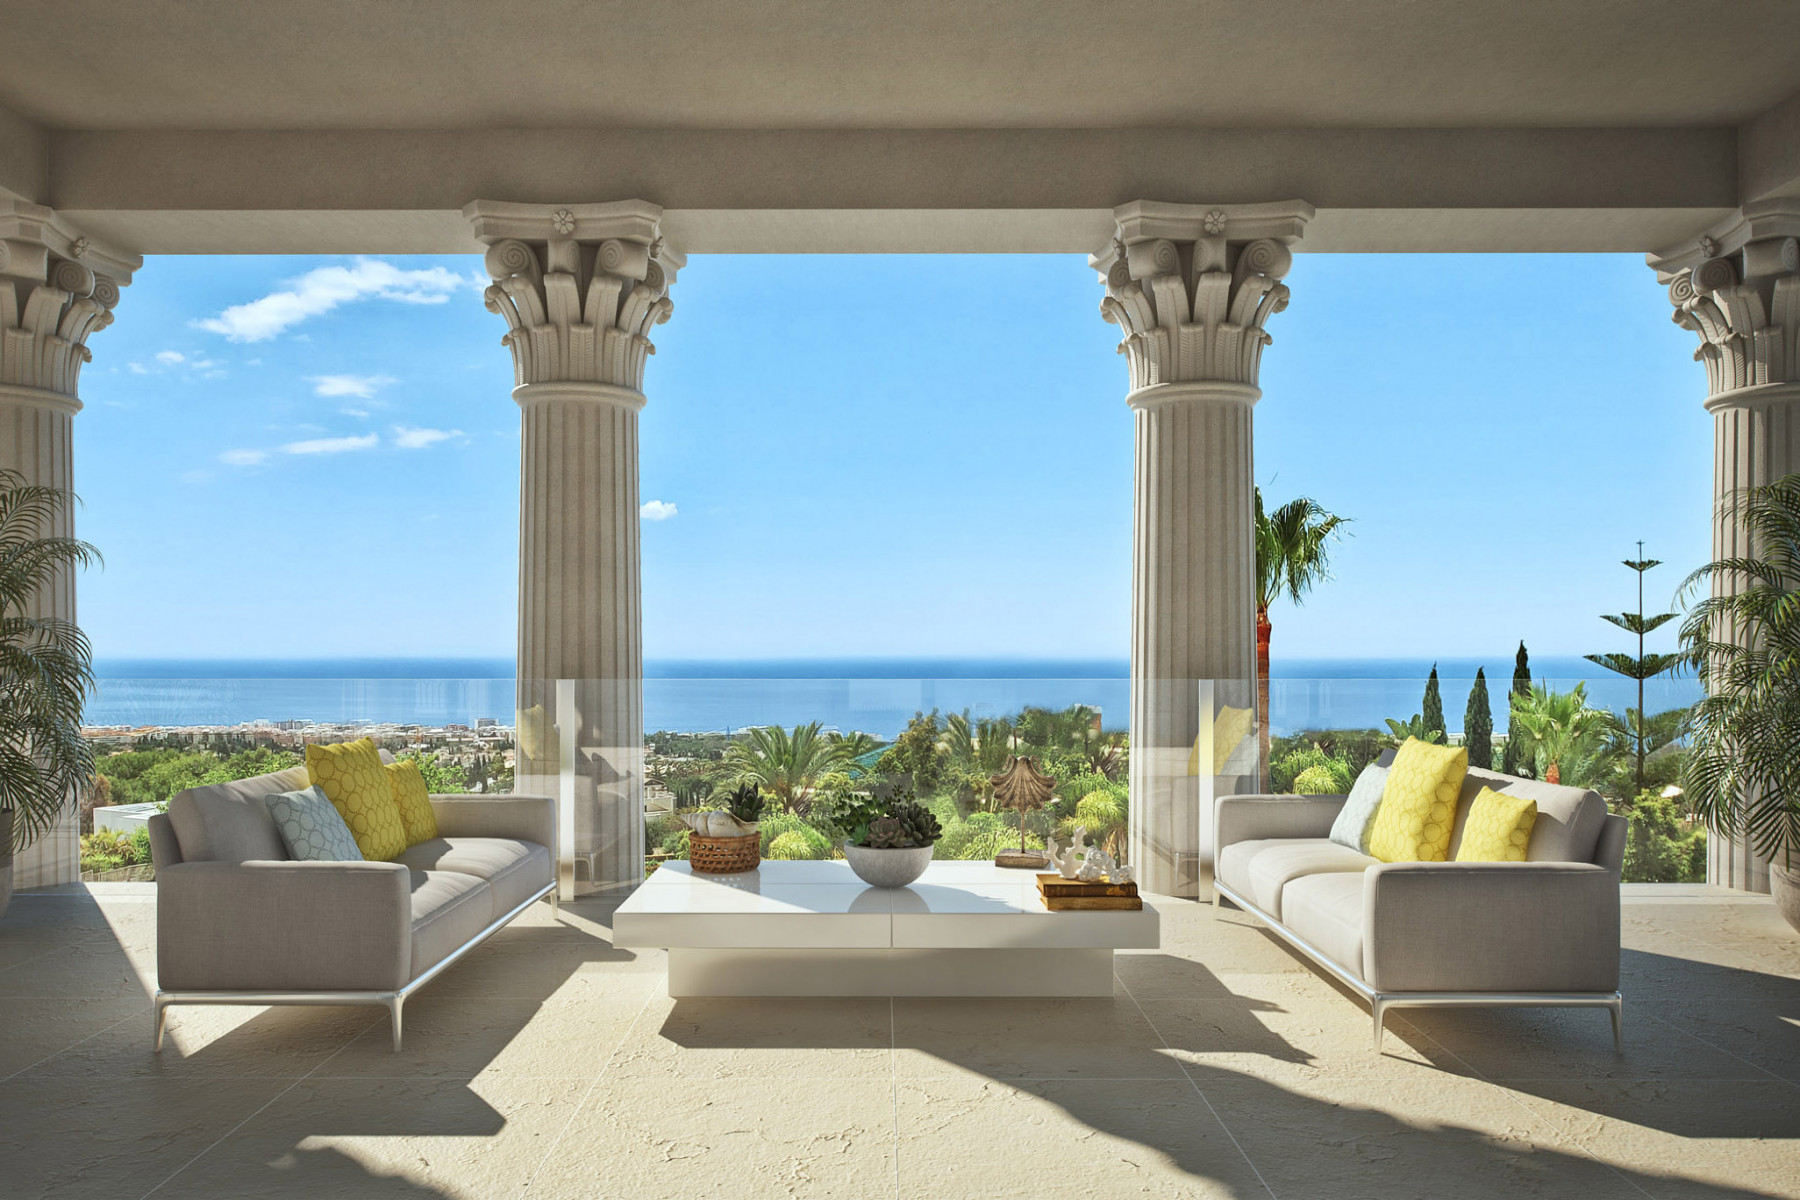 Superb seven bedroom villa with sea views in Sierra Blanca Marbella